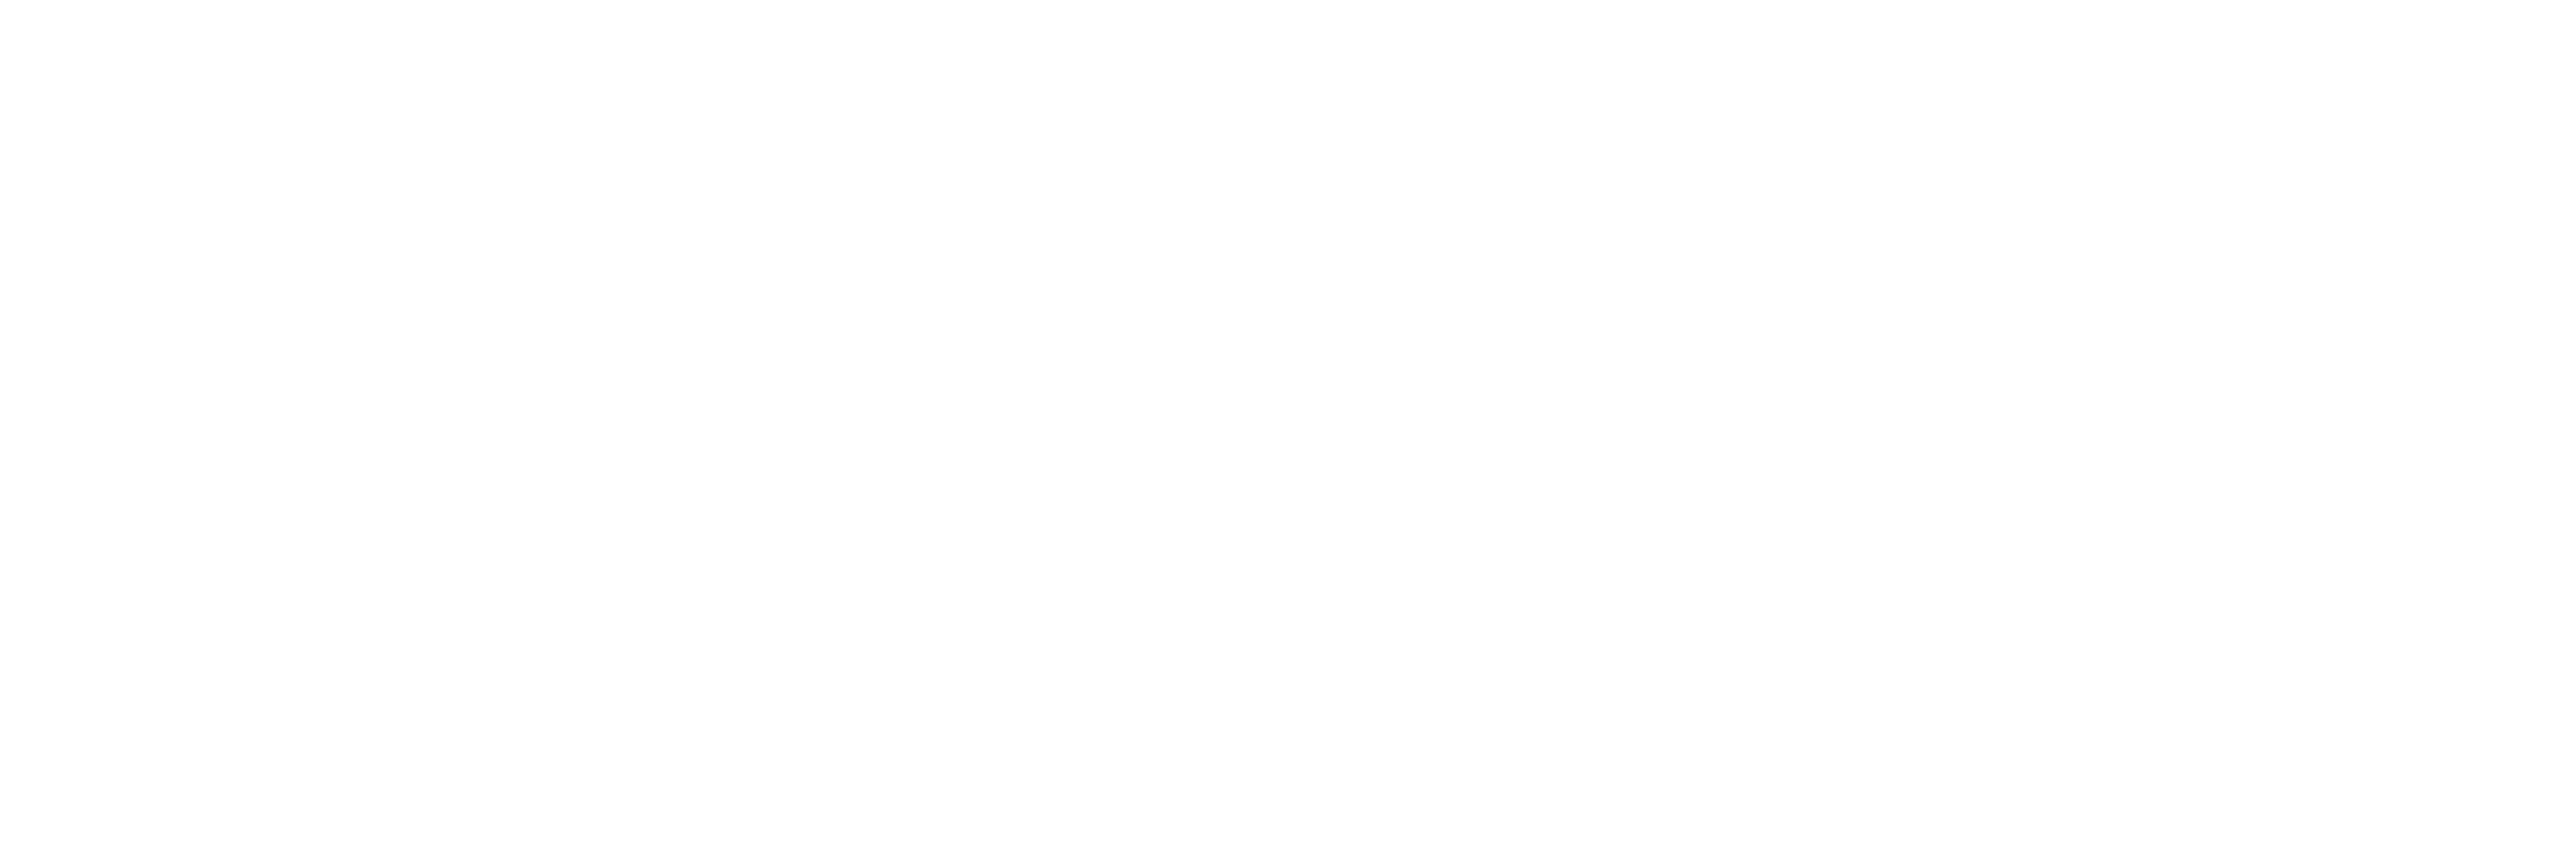 PVRI logo in white